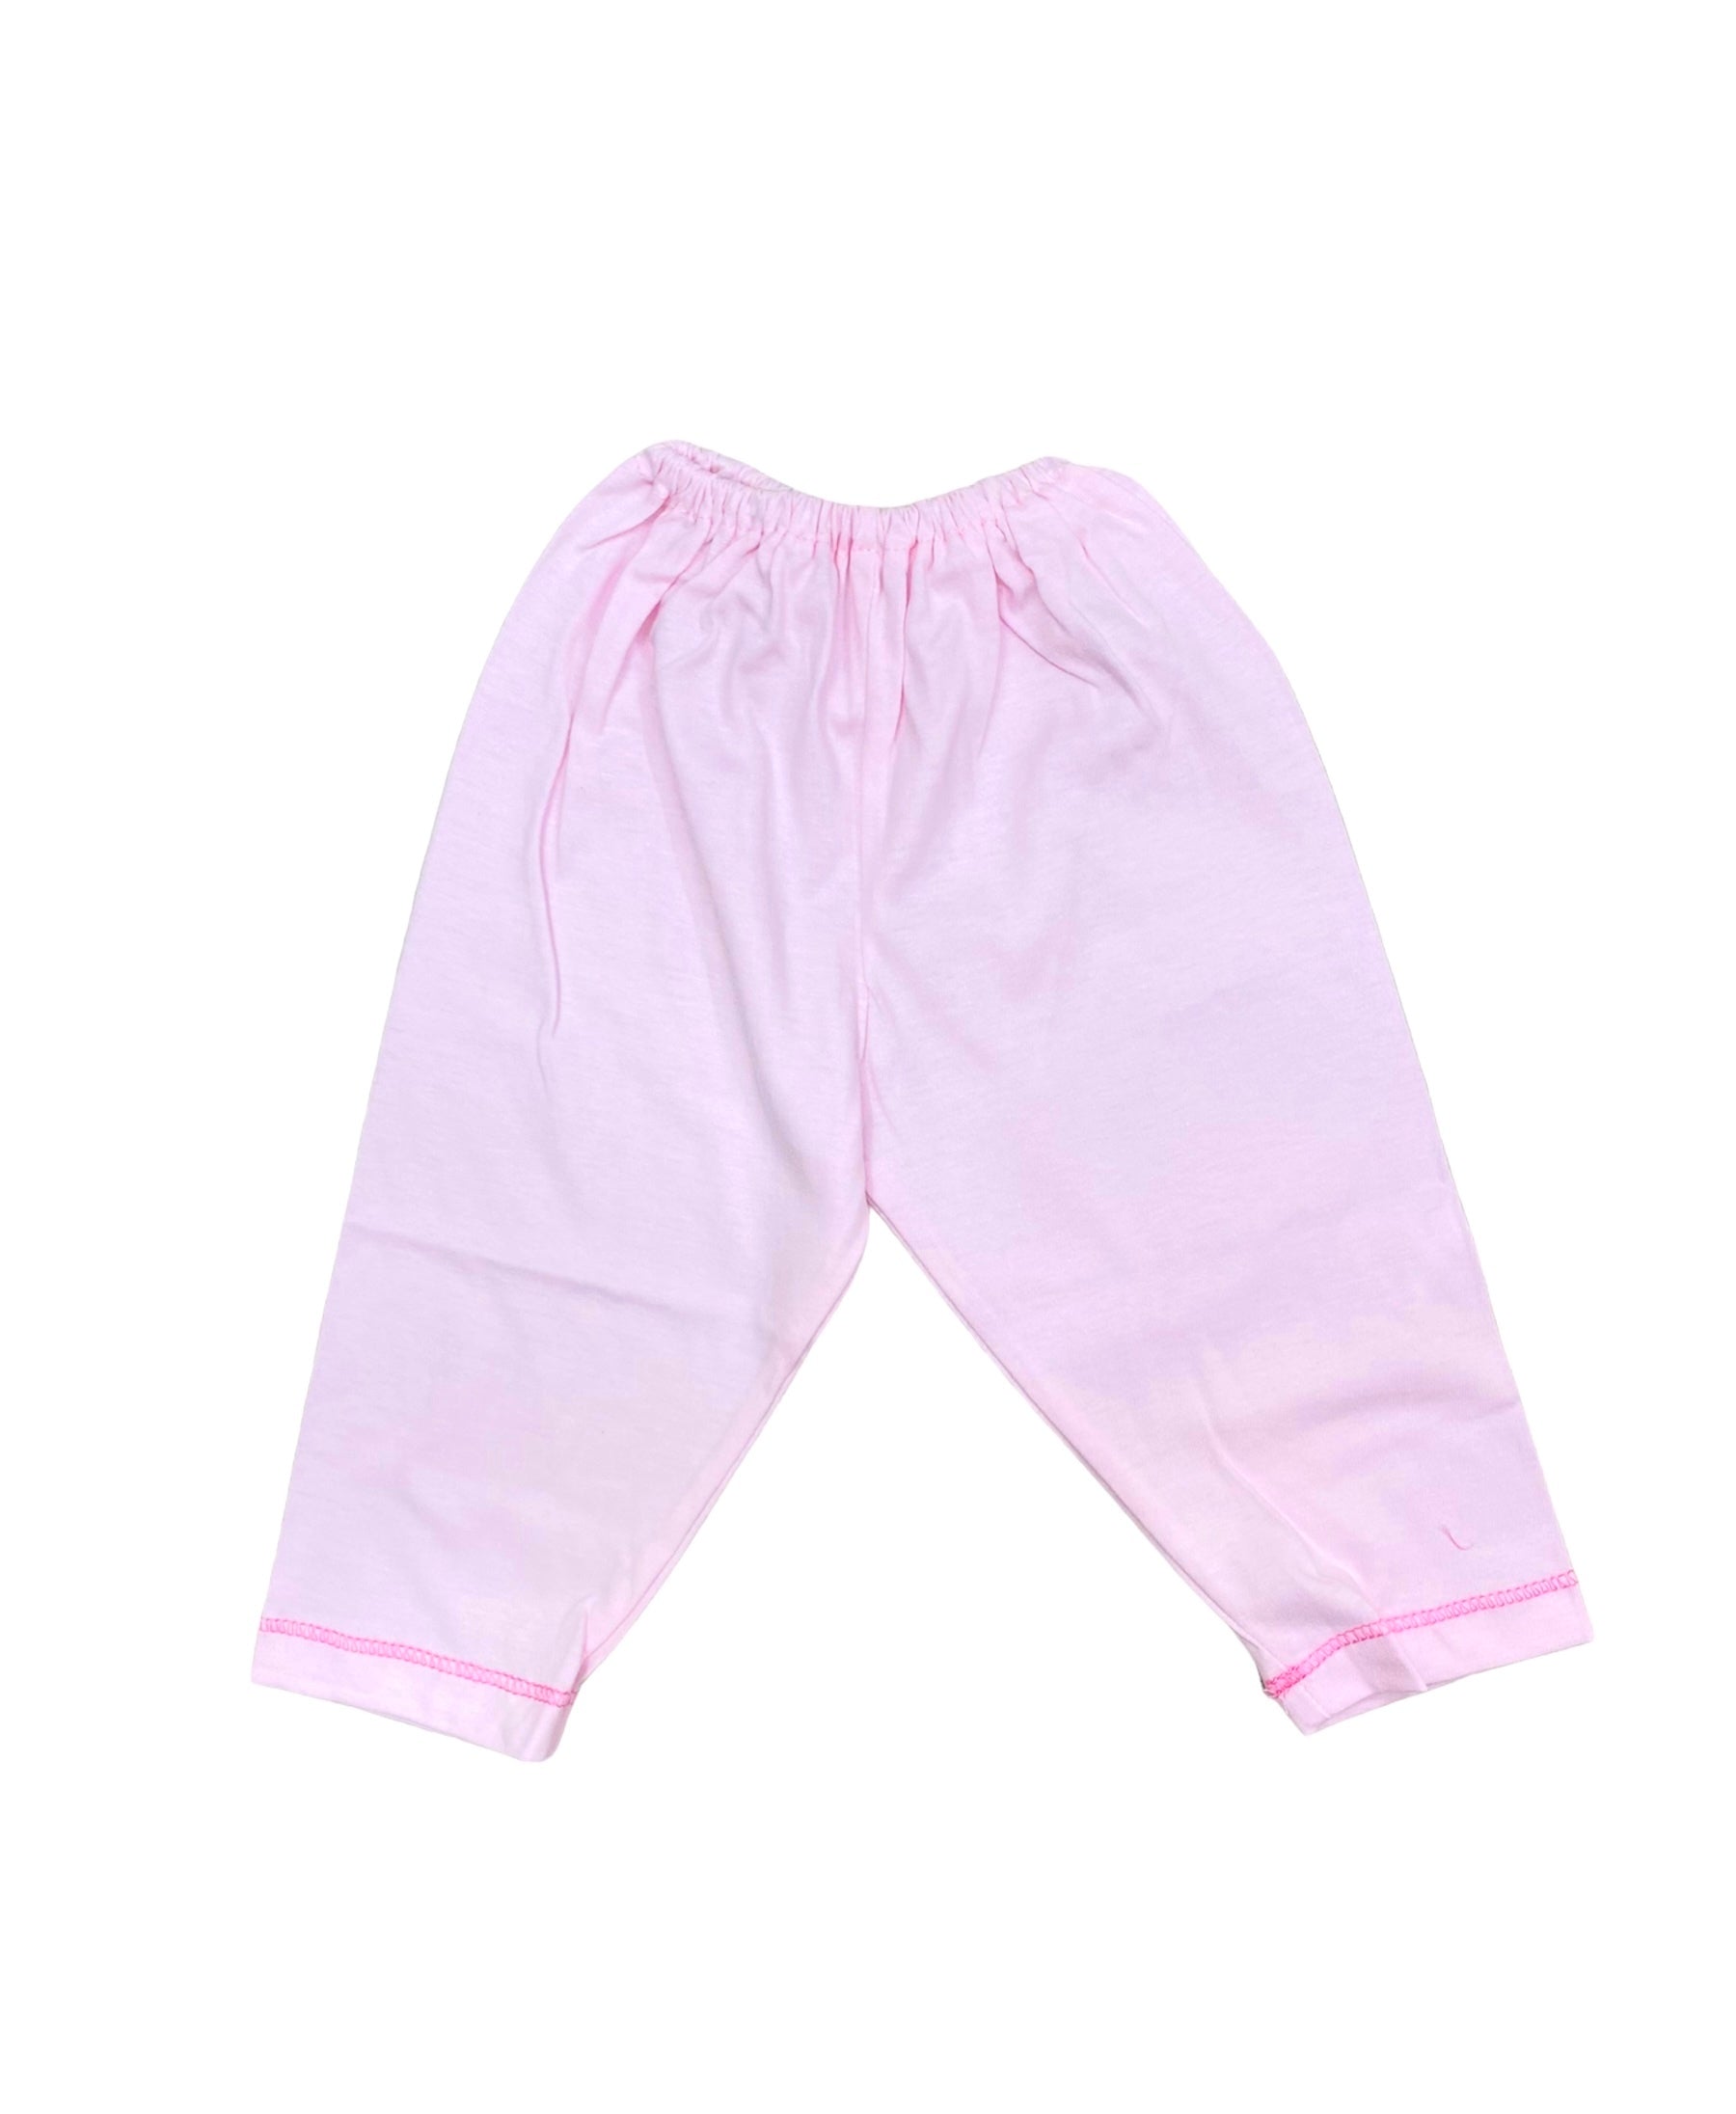 PinkI Love Mom Newborn Pajama Suit / Night Suit